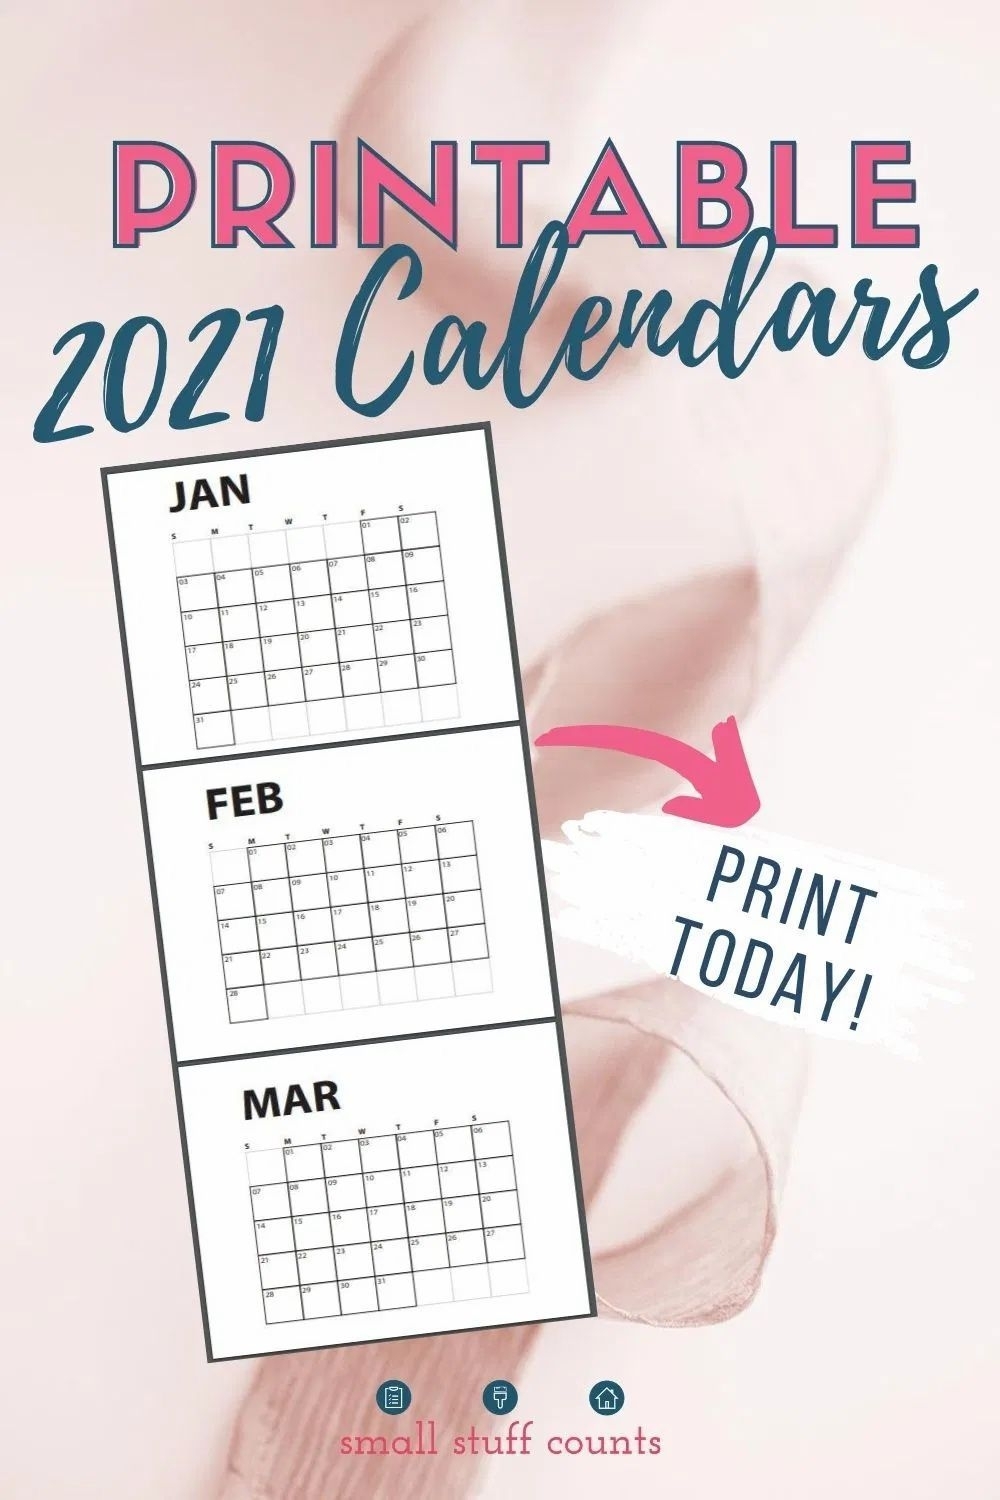 Take Printable Calendar 2021 Monday To Sunday